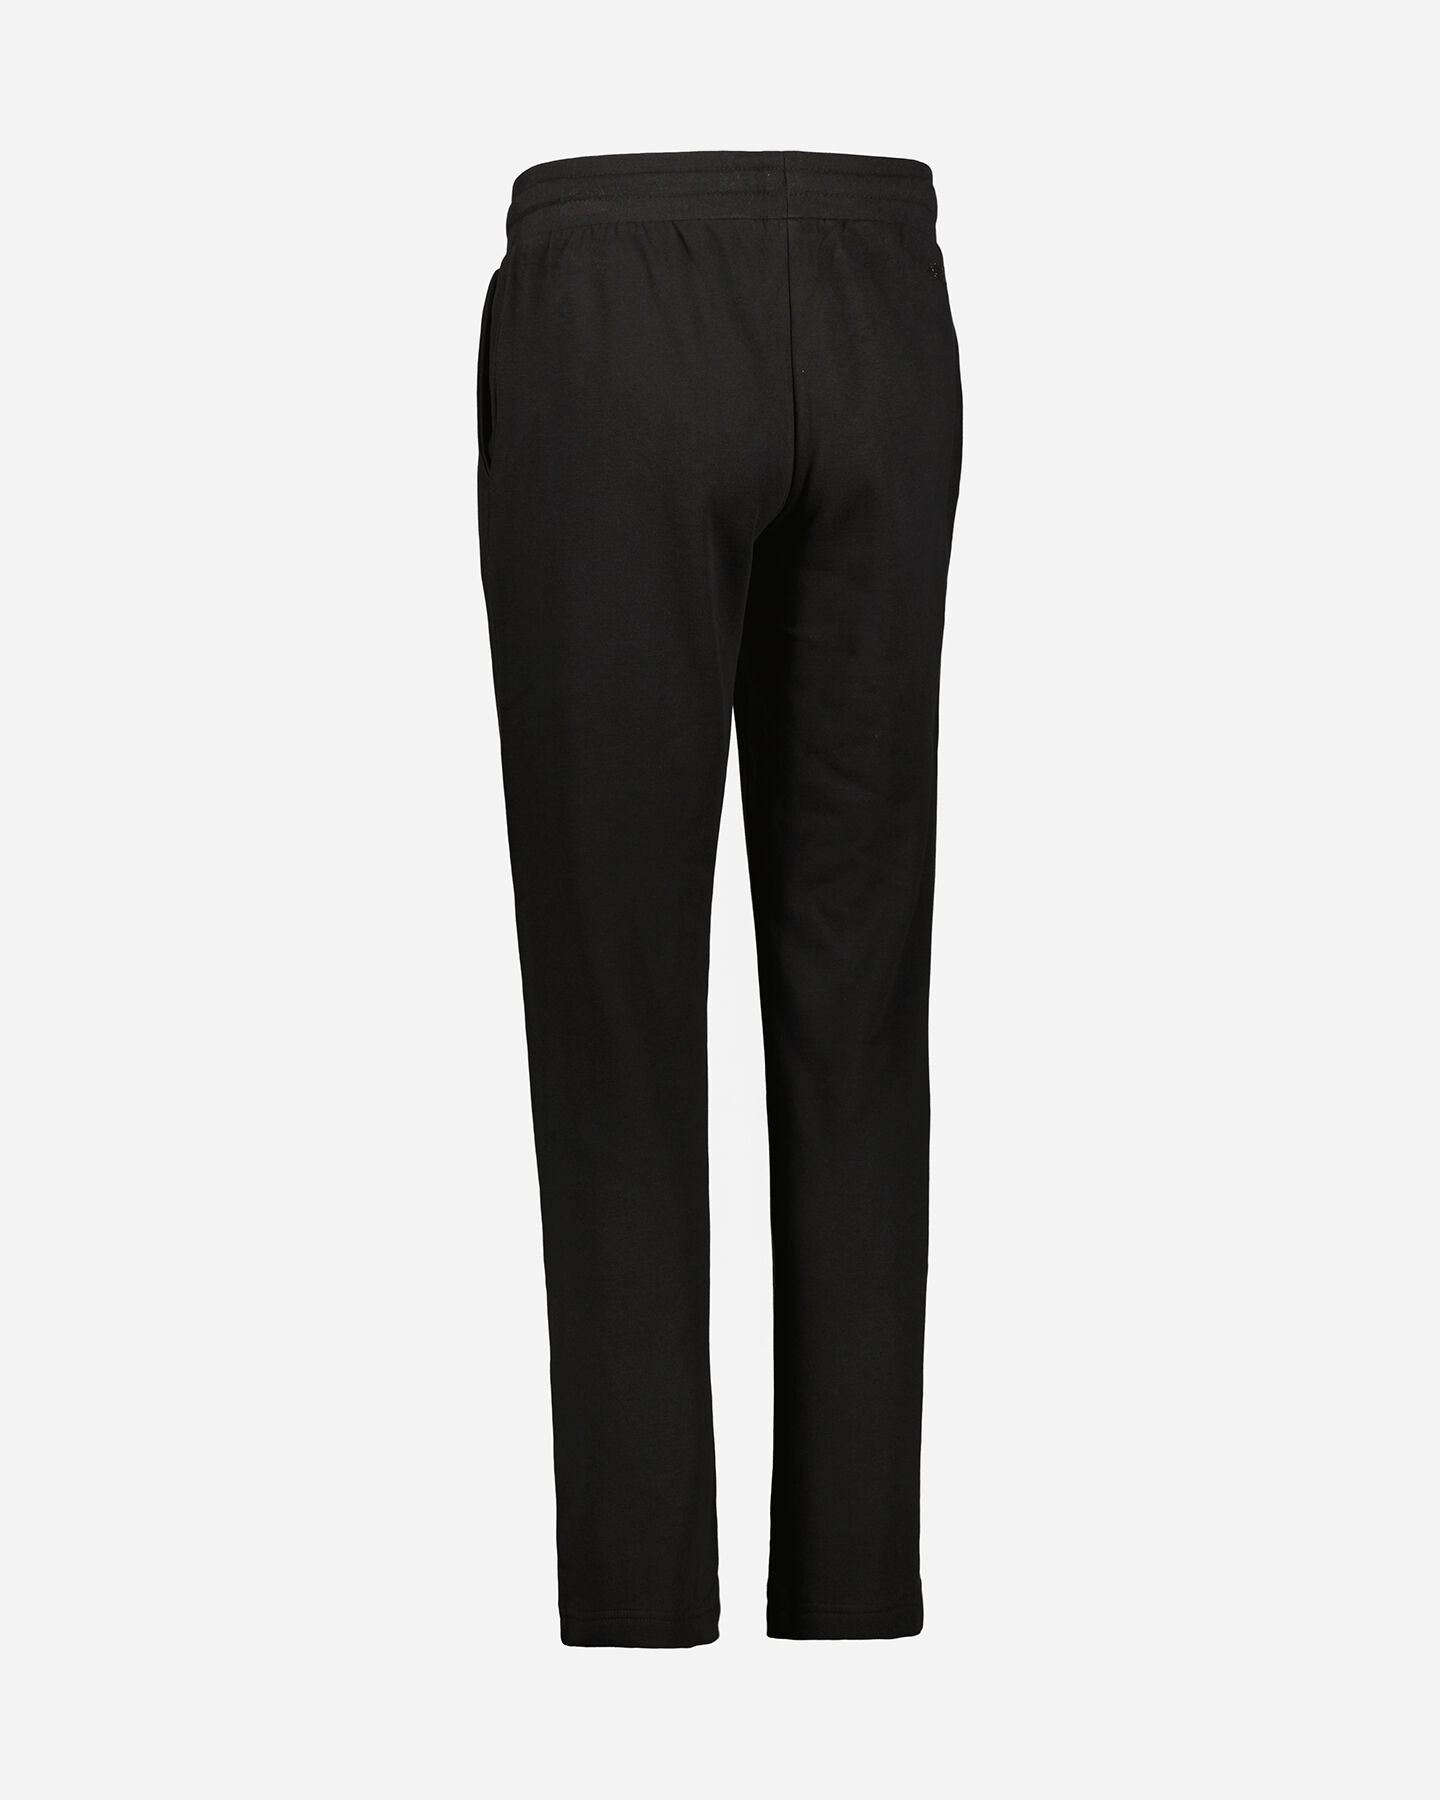  Pantalone ADMIRAL CLASSIC W S4106251|050|S scatto 2